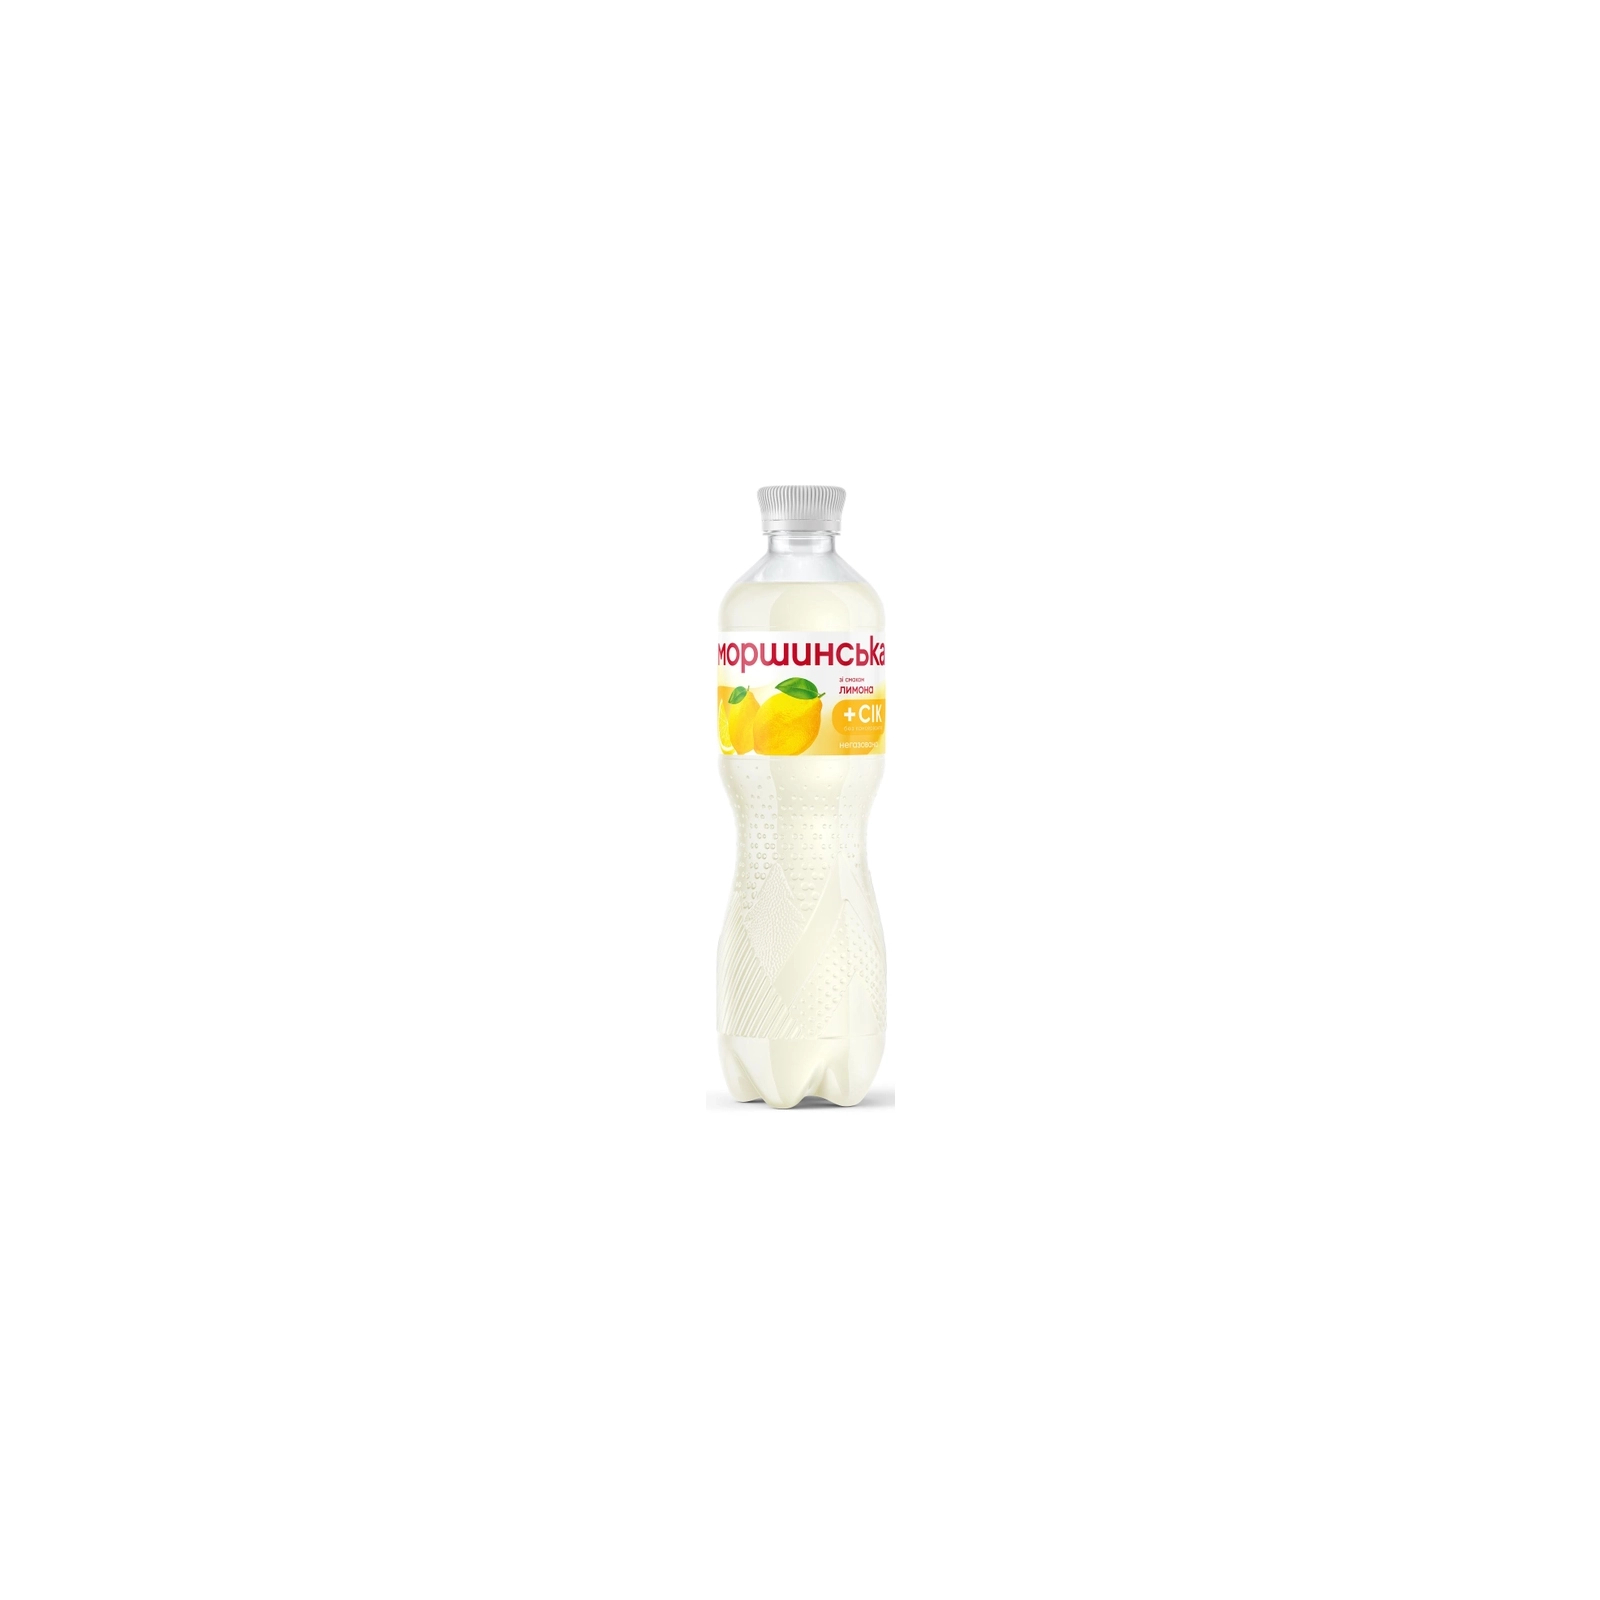 Напиток Моршинська сокосодержащий негазированный со вкусом лимона 0.5 л (4820017002547)